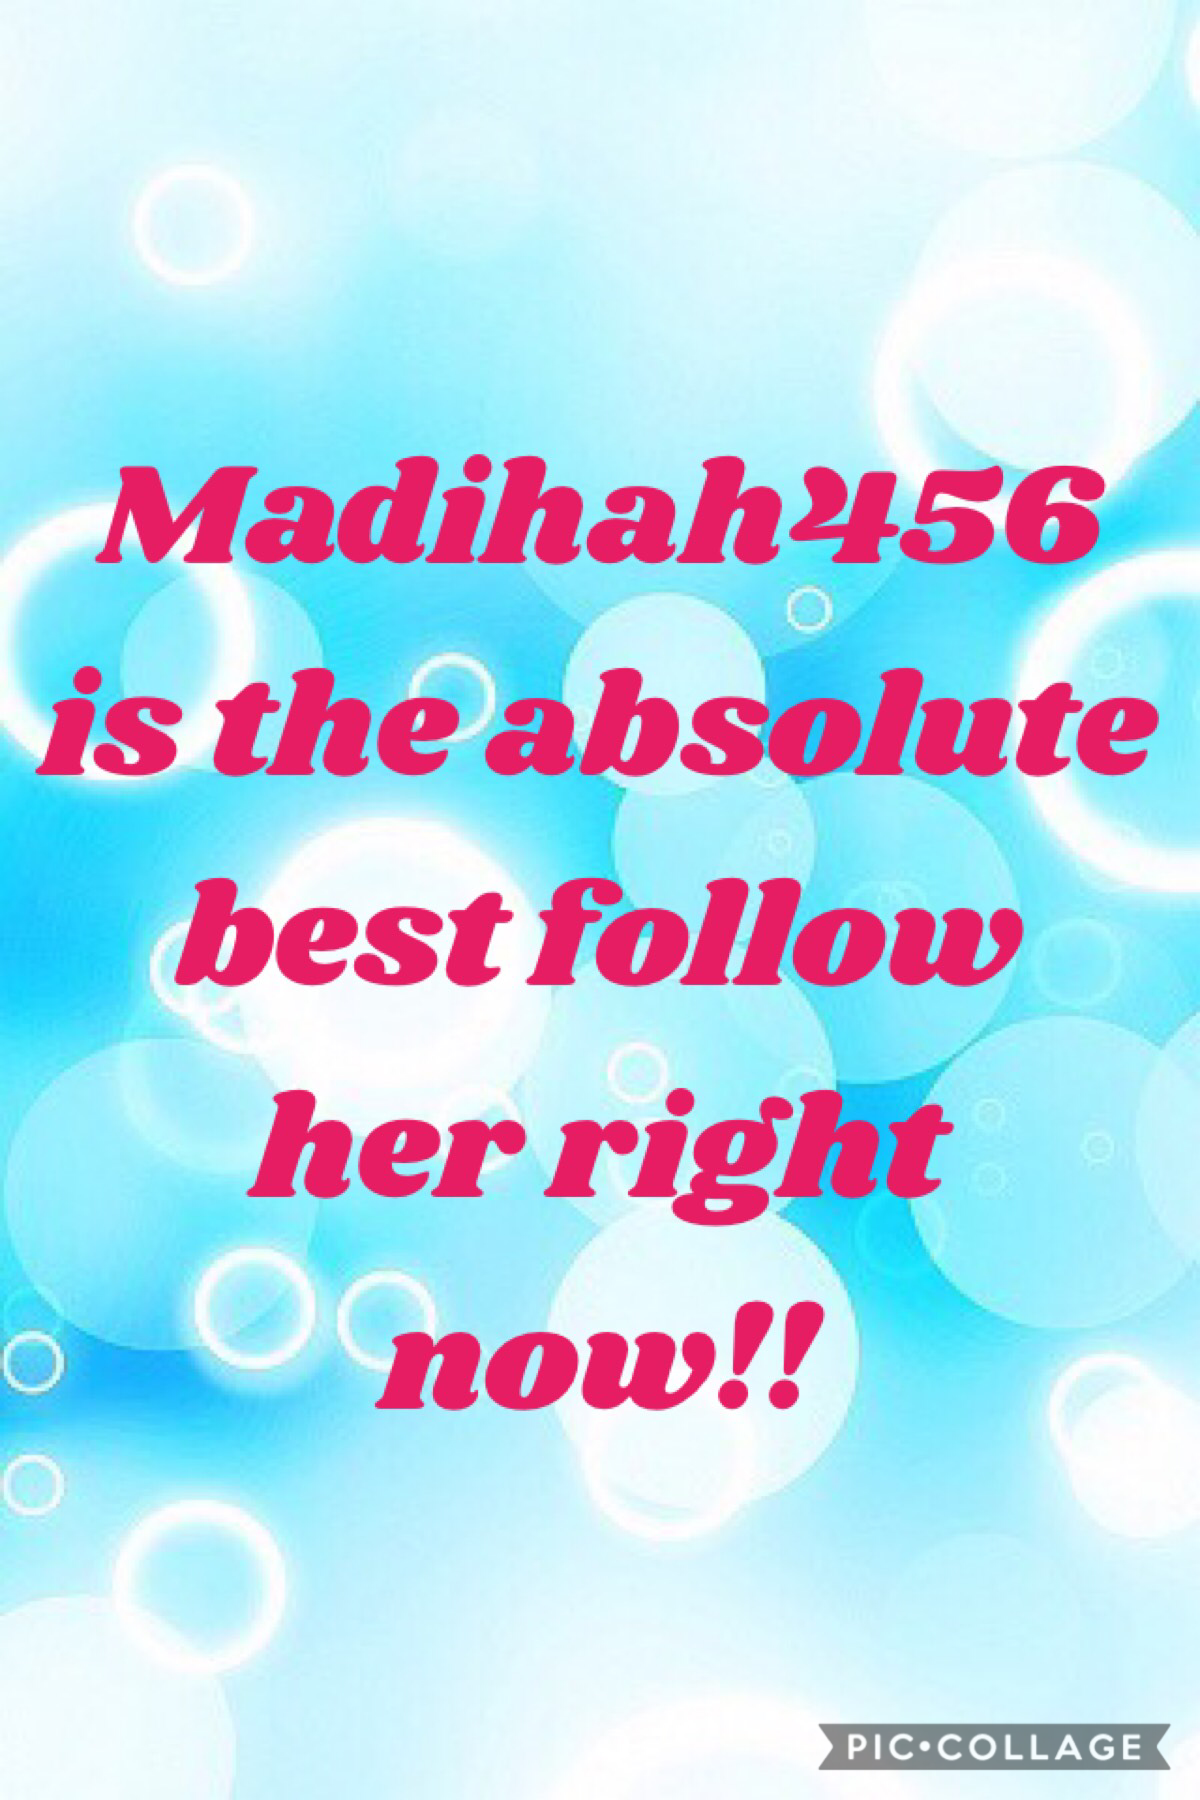 MaDiHaH4 5 6